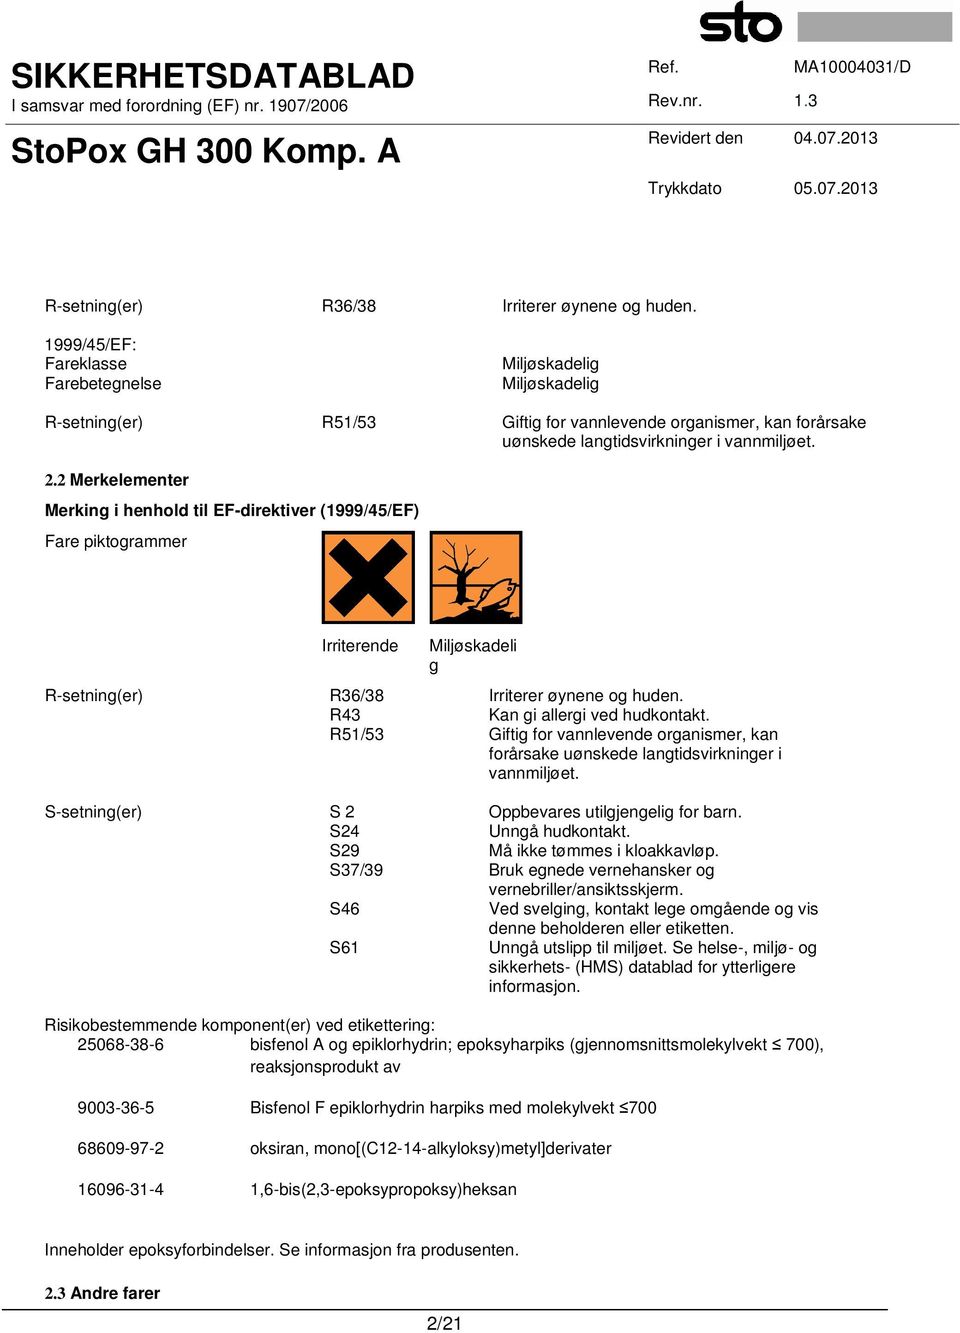 2 Merkelementer Merking i henhold til EF-direktiver (1999/45/EF) Fare piktogrammer Irriterende Miljøskadeli g  R43 Kan gi allergi ved hudkontakt.